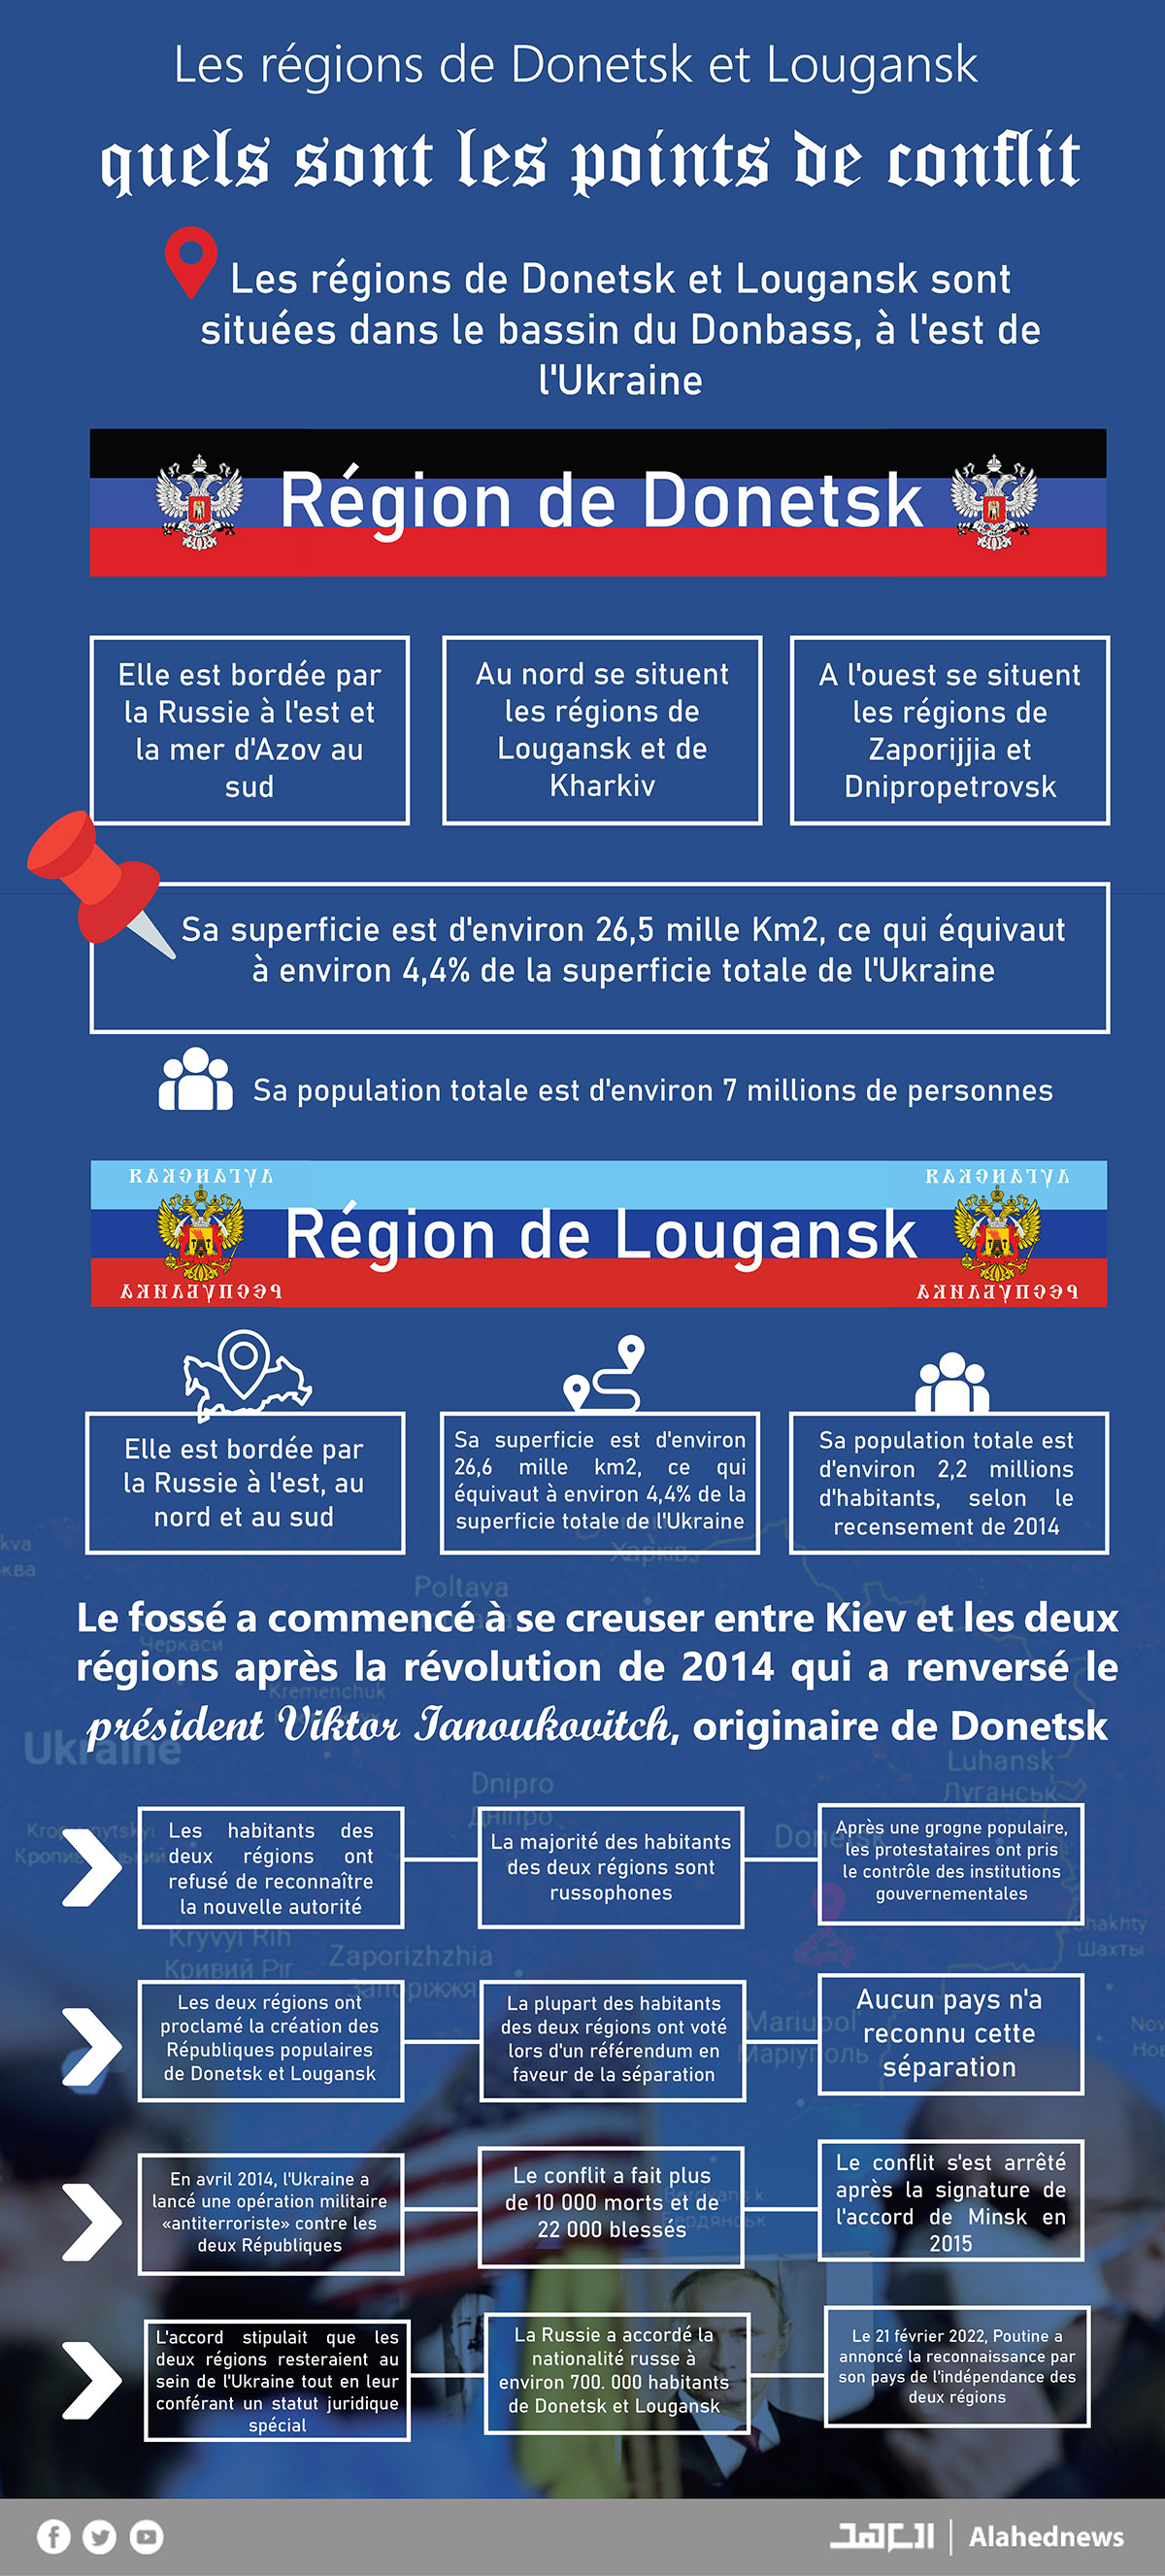 Les régions de Donetsk et Lougansk, quels sont les points de conflit